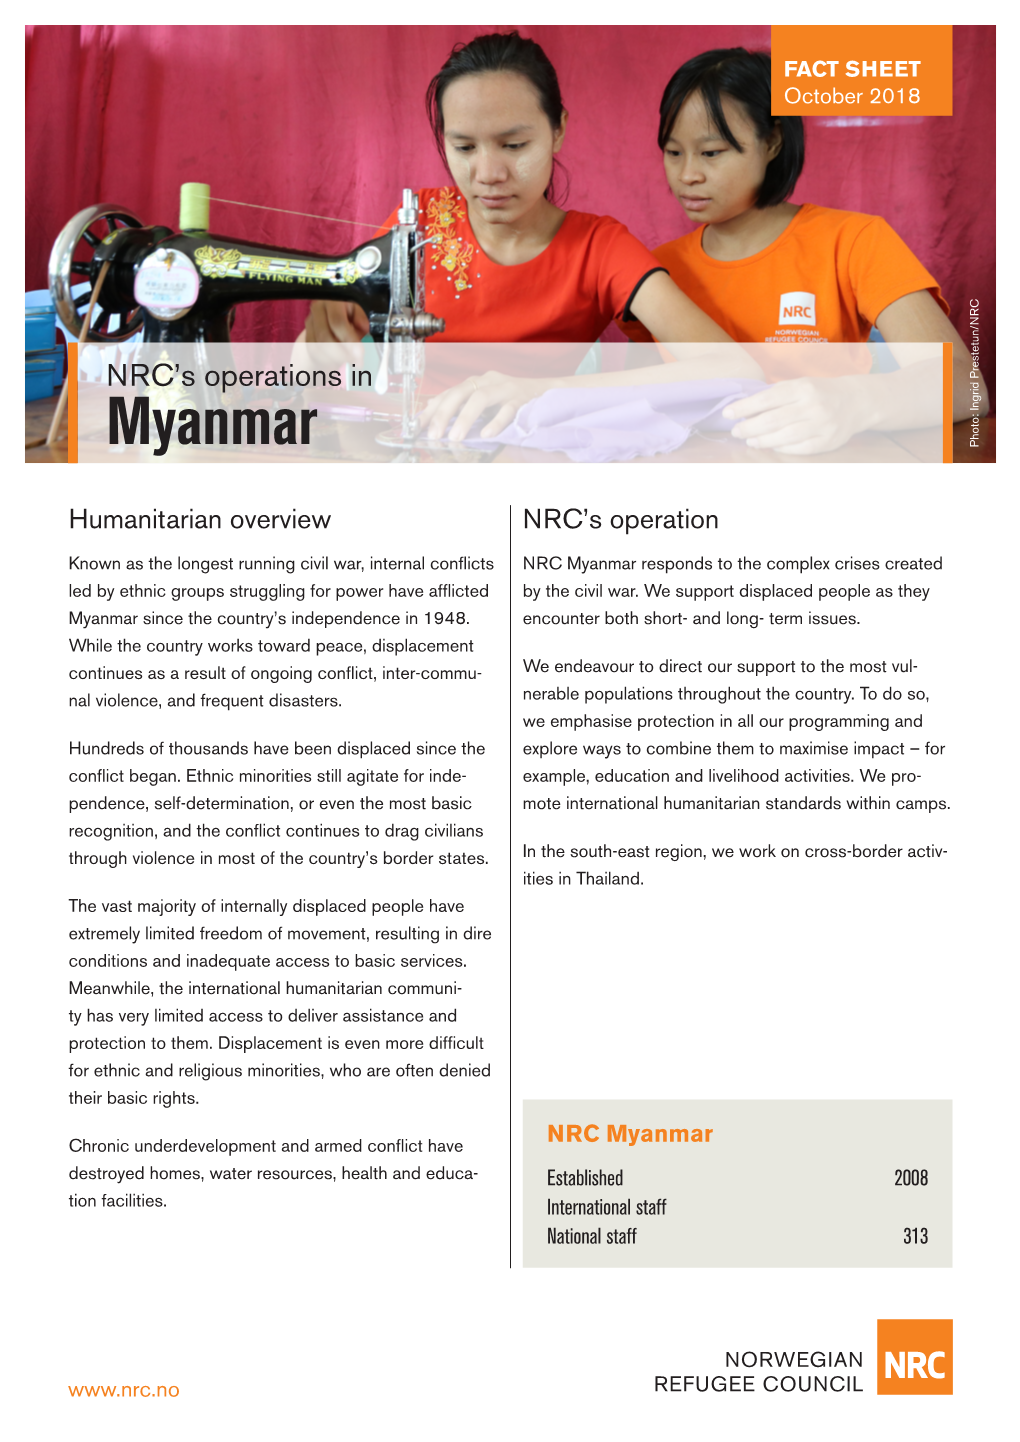 Myanmar Photo: Ingrid Prestetun/NRC